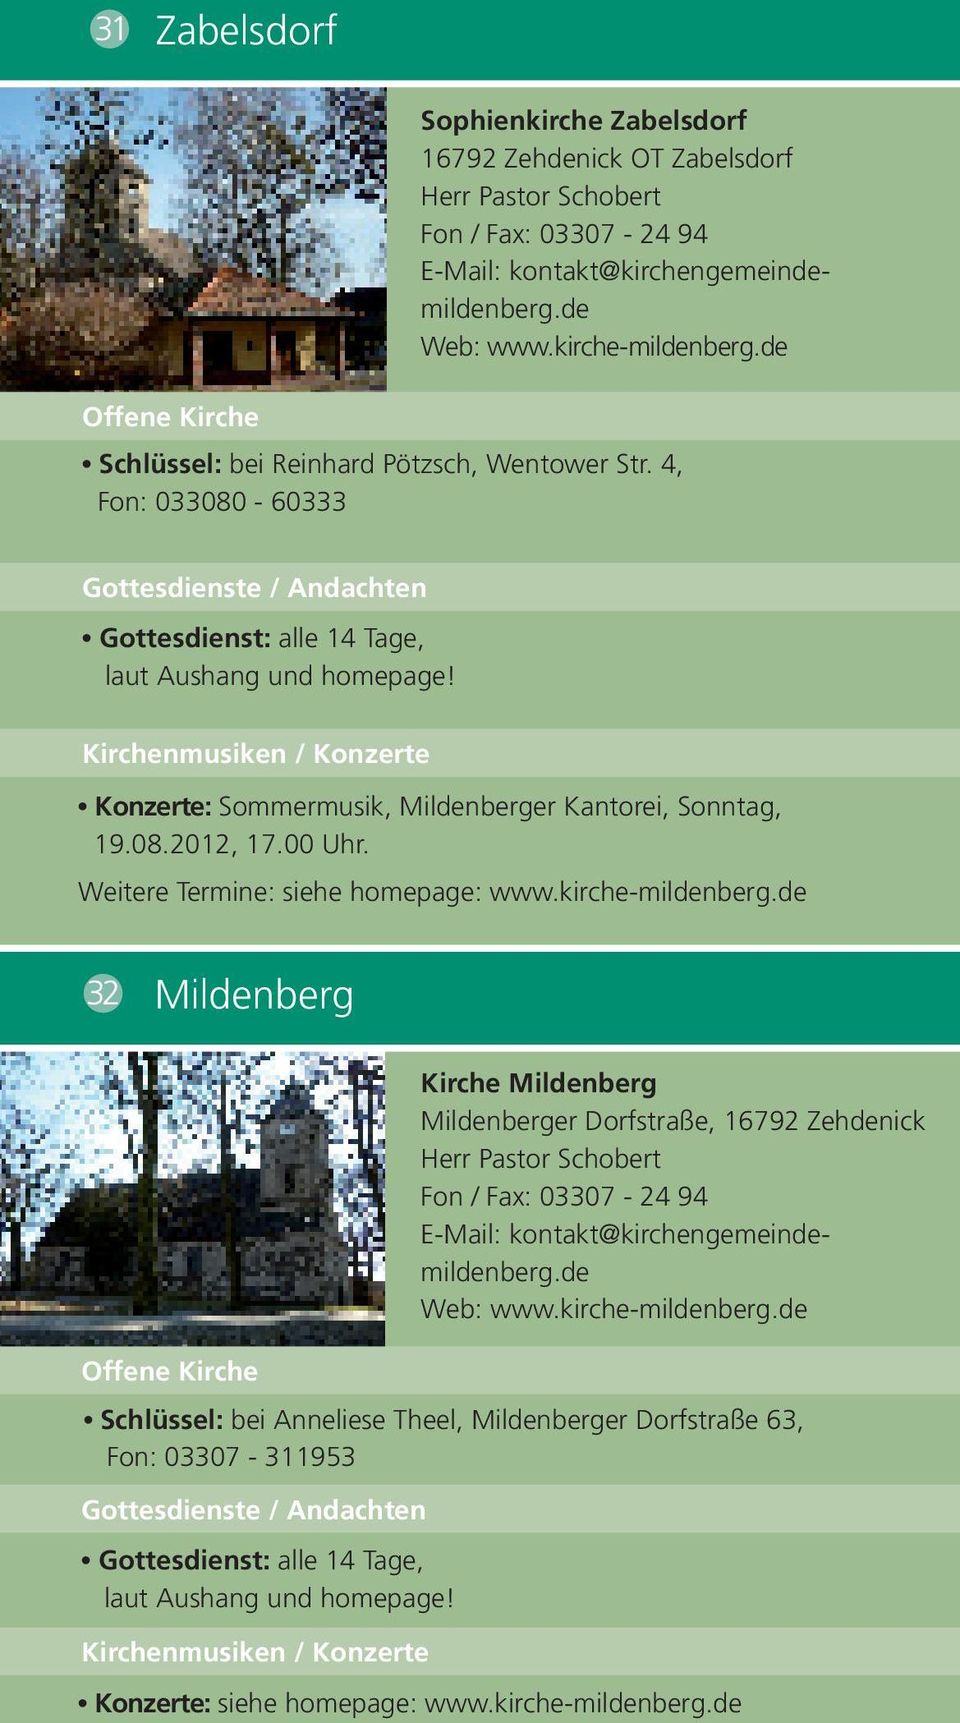 00 Uhr. Weitere Termine: siehe homepage: www.kirche-mildenberg.